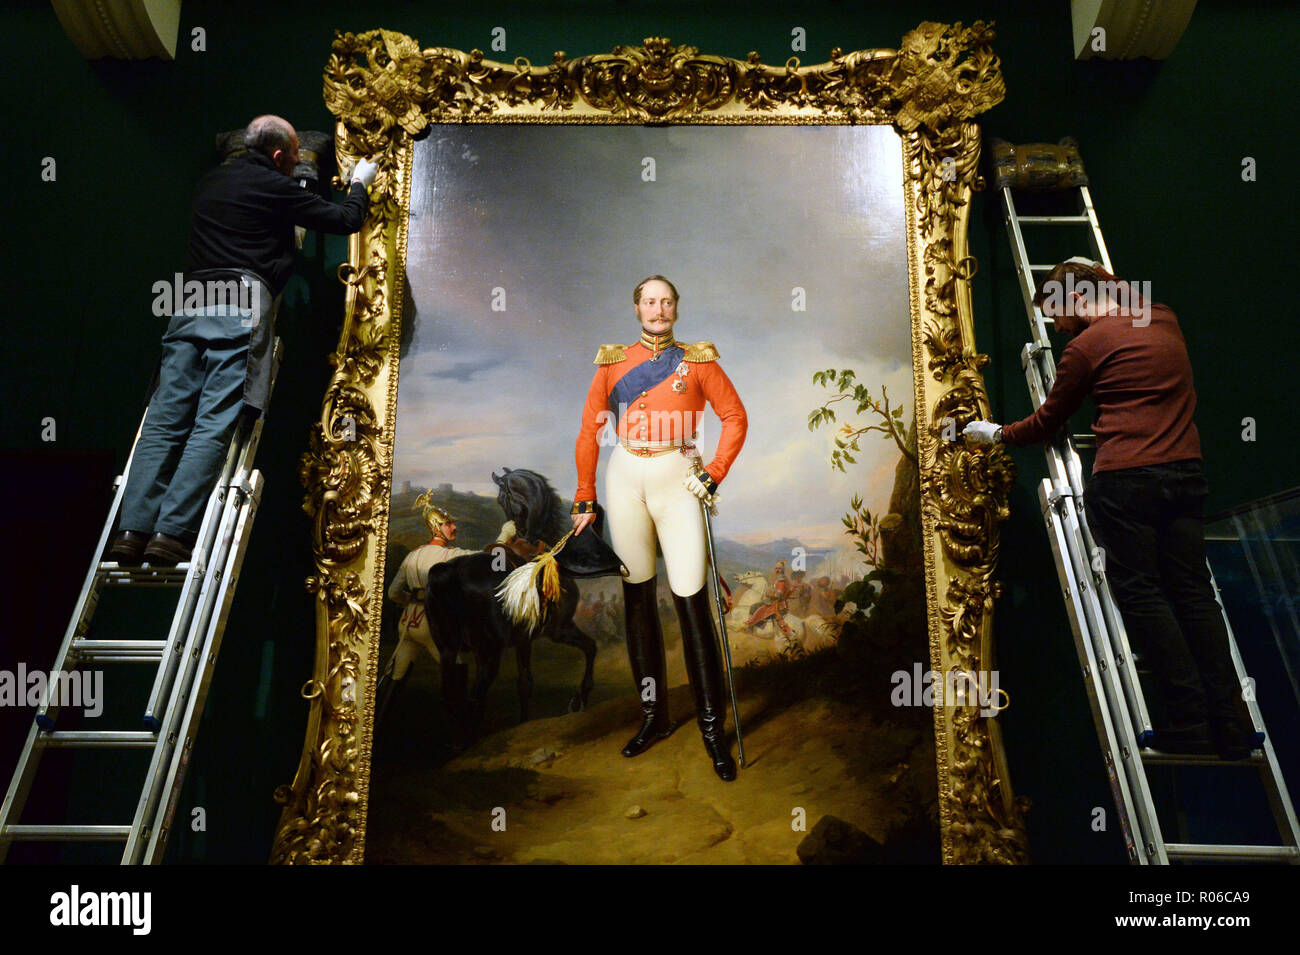 De 0001 sous embargo vendredi 02 novembre un portrait de Nicolas Ier de Russie, commandé comme cadeau à la reine Victoria, en cours d'installation de l'avant la nouvelle exposition Russie : image et les Romanov, qui ouvre la semaine prochaine au Queen's Gallery, Buckingham Palace, Londres. Banque D'Images